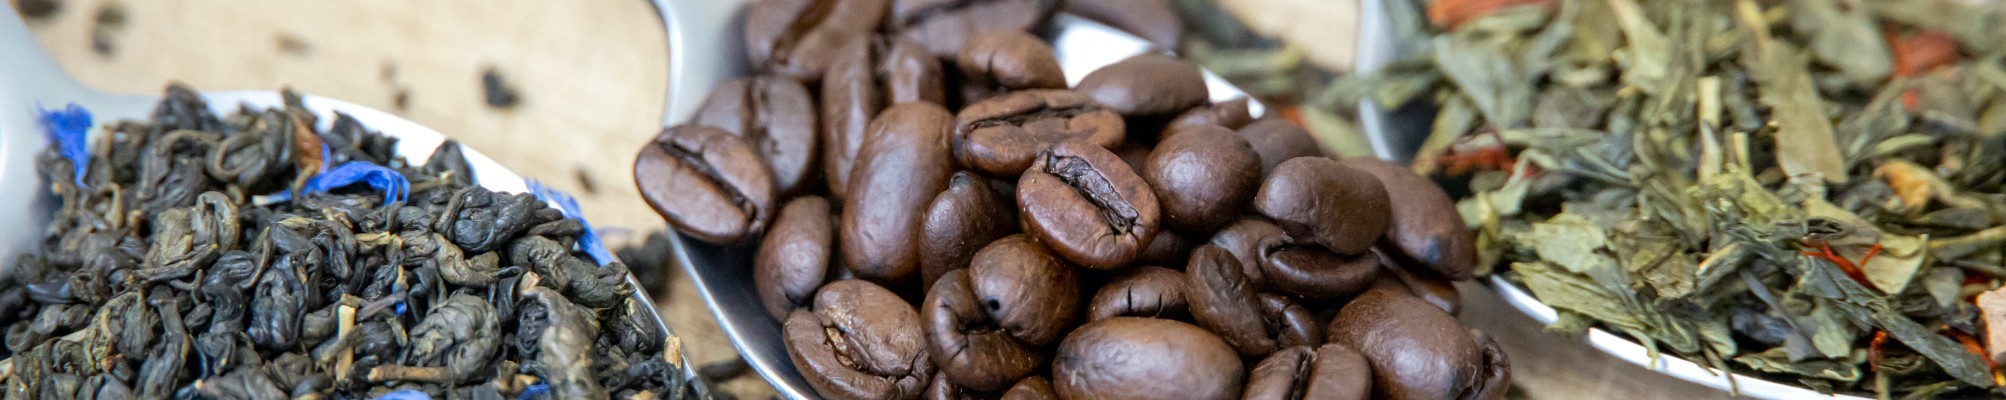 Cacao Orgánico y preparado Desayunos - SUPERNATURA